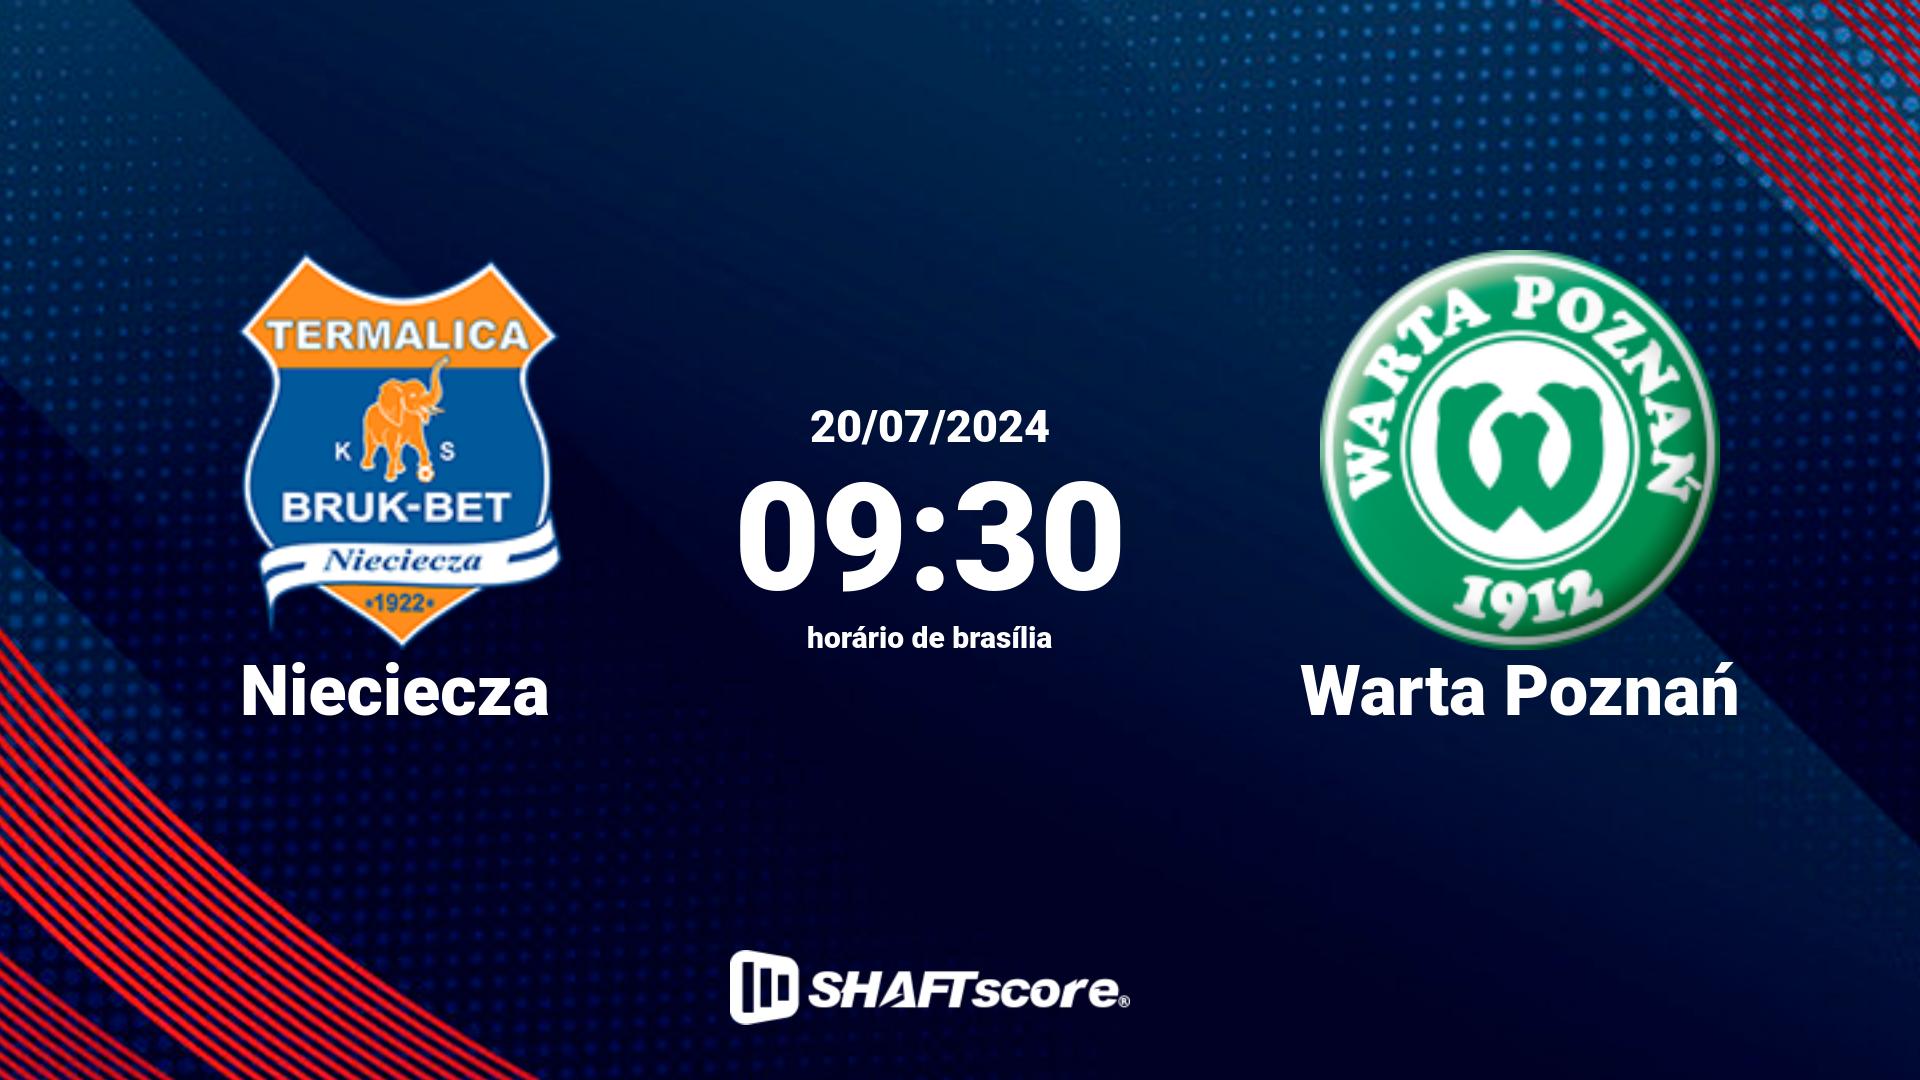 Estatísticas do jogo Nieciecza vs Warta Poznań 20.07 09:30